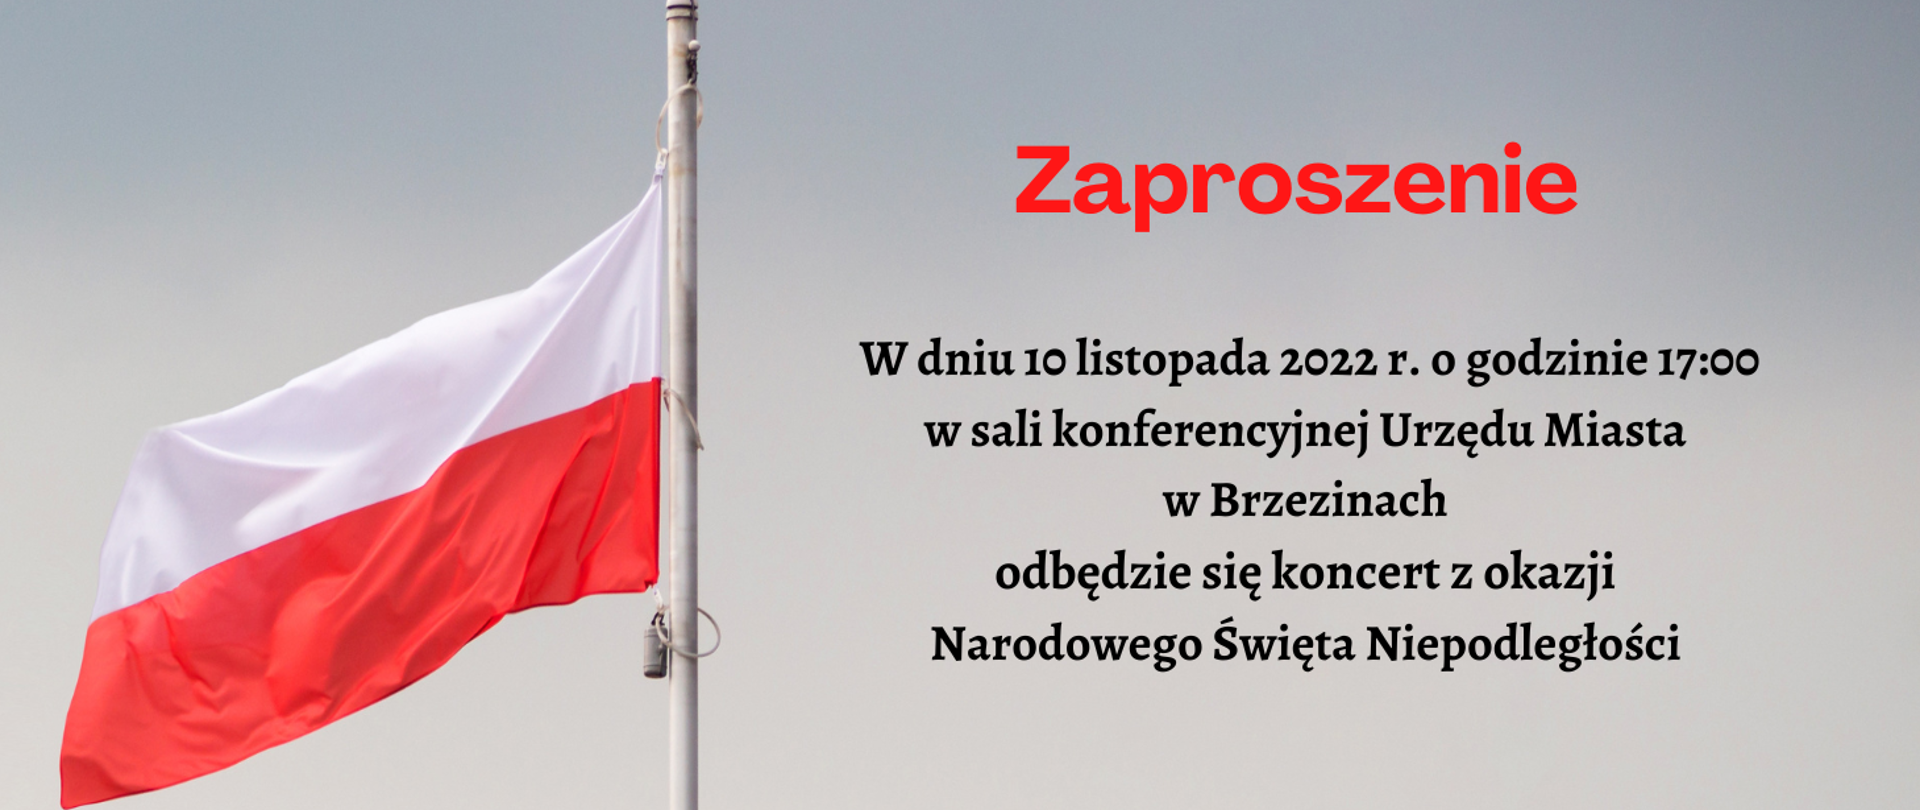 Grafika informująca o koncercie z okazji Narodowego Święta Niepodległości. Na szarym tle po lewej stronie maszt z flagą Polski, po prawo zaproszenie na koncert w dniu 10 listopada 2022 roku na g. 17.00